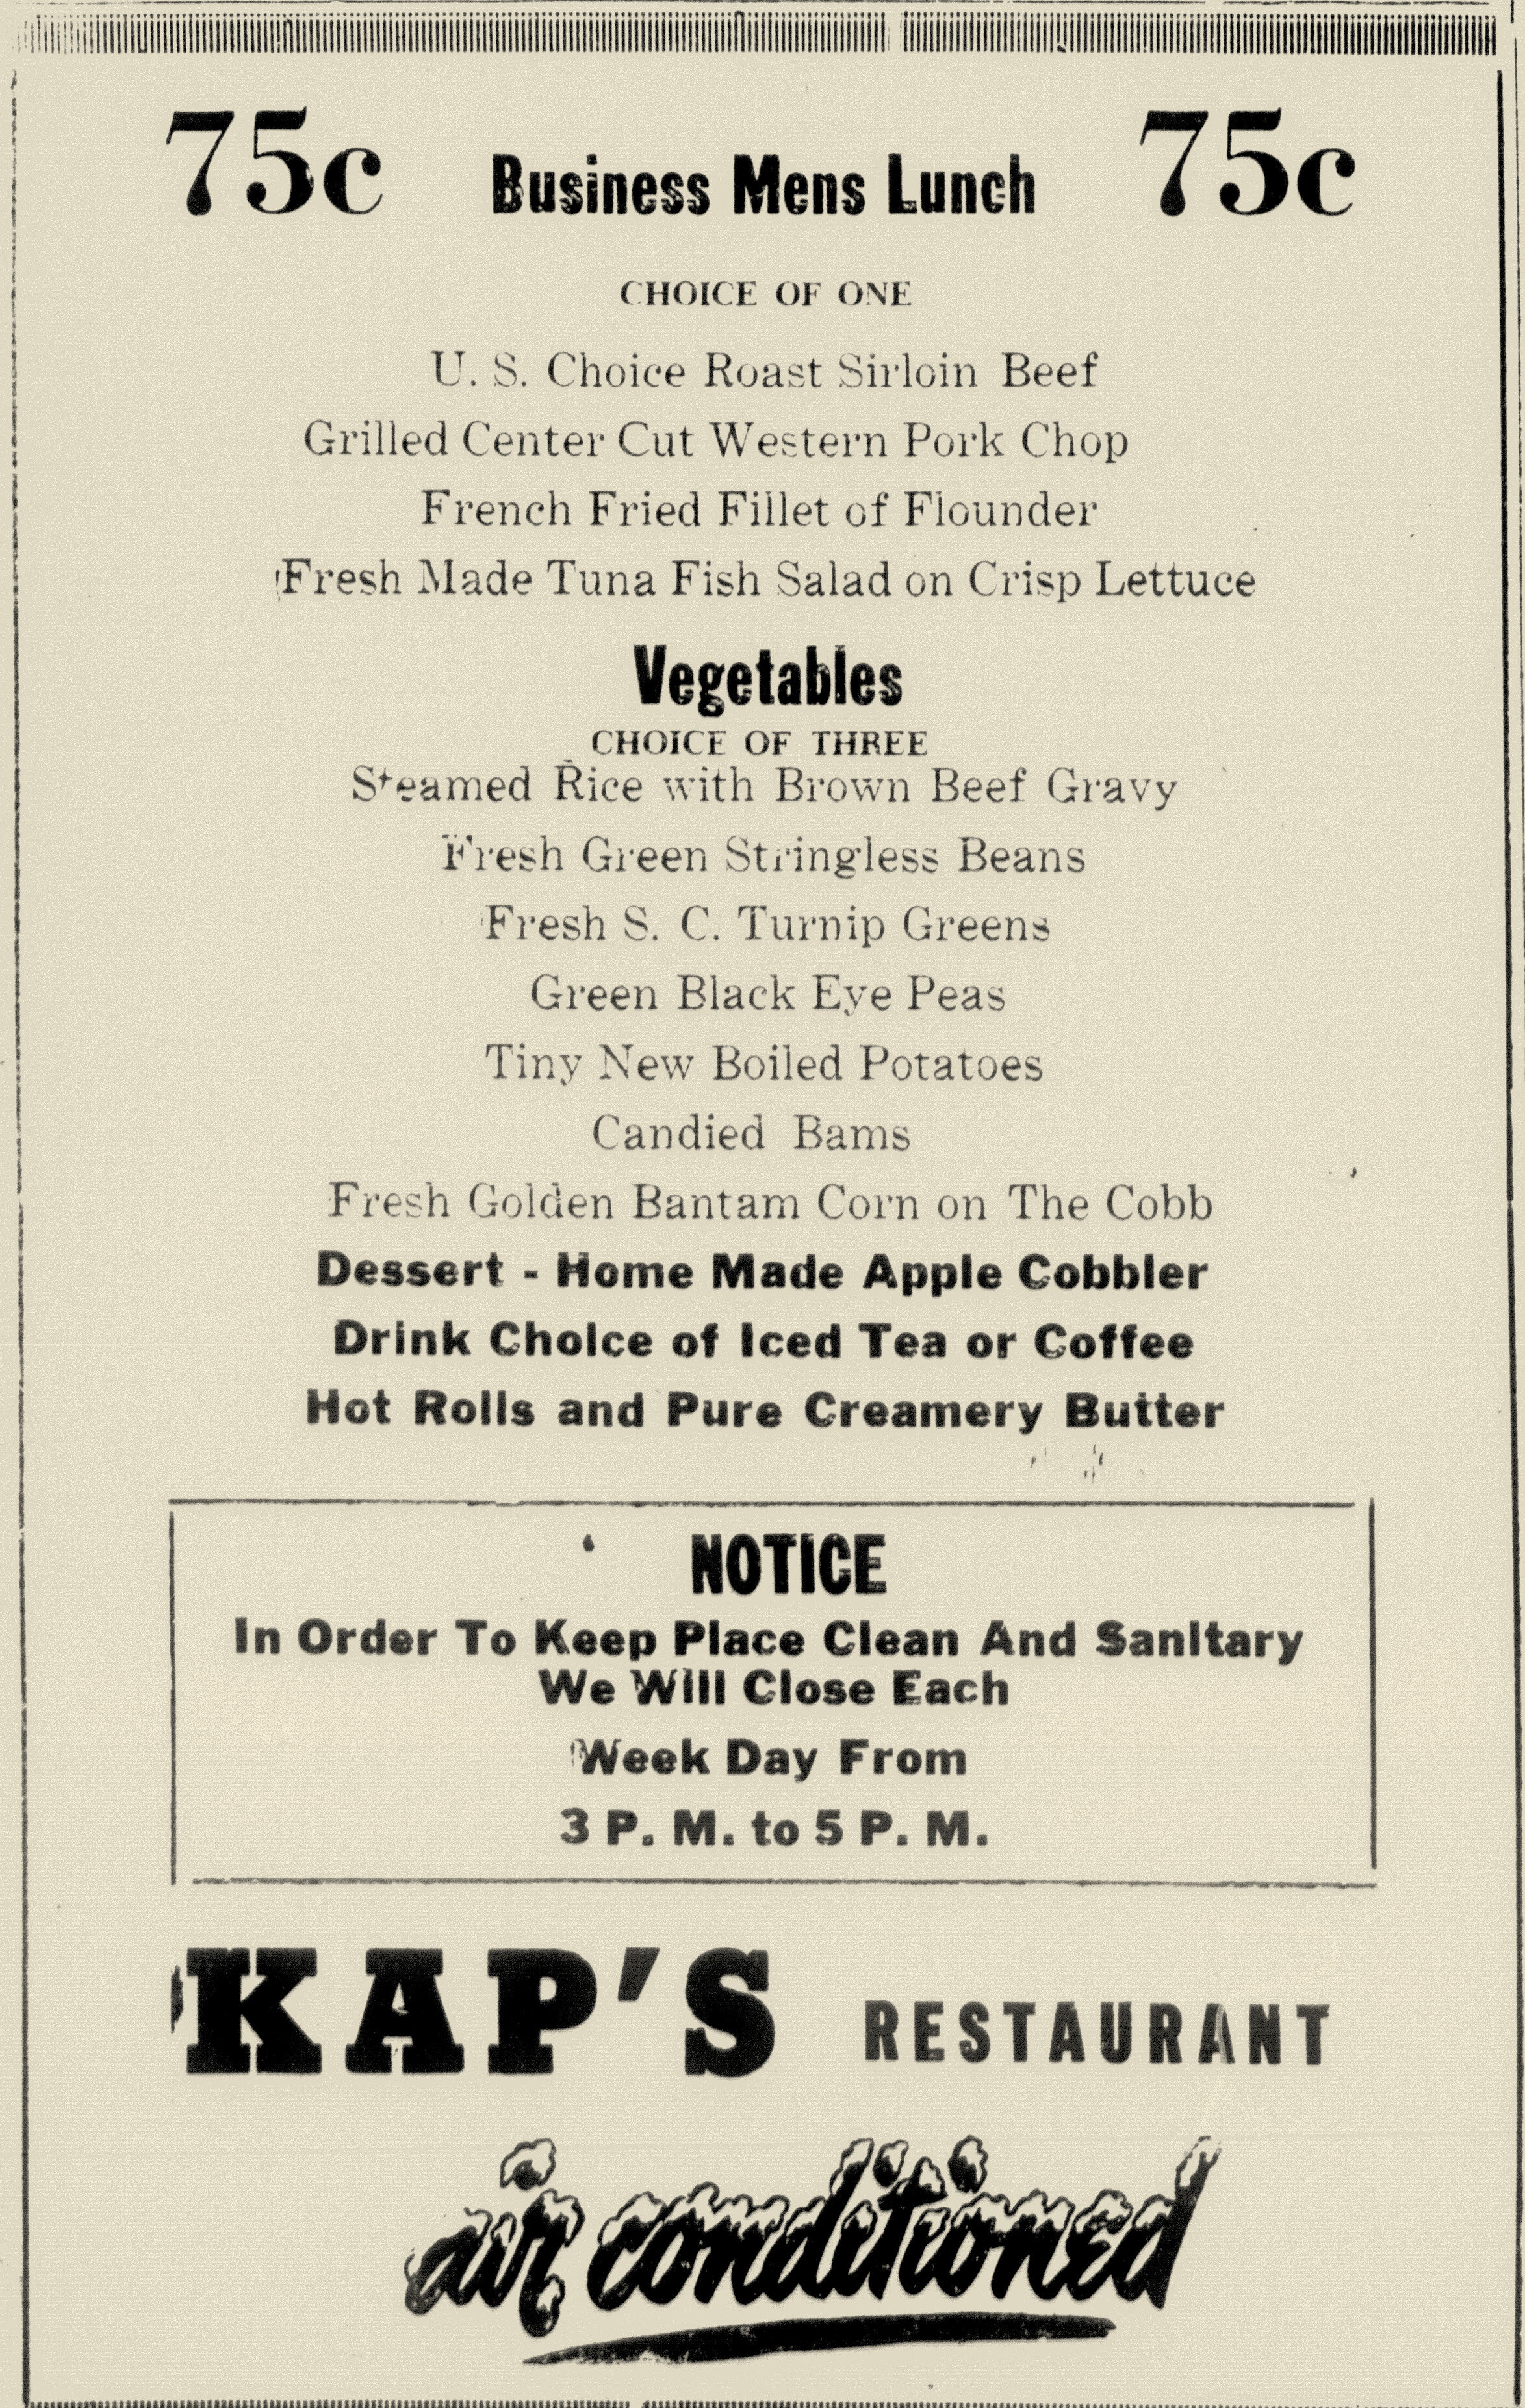 Kap's Restaurant, Aiken Standard & Review, 9-28-1951.jpg